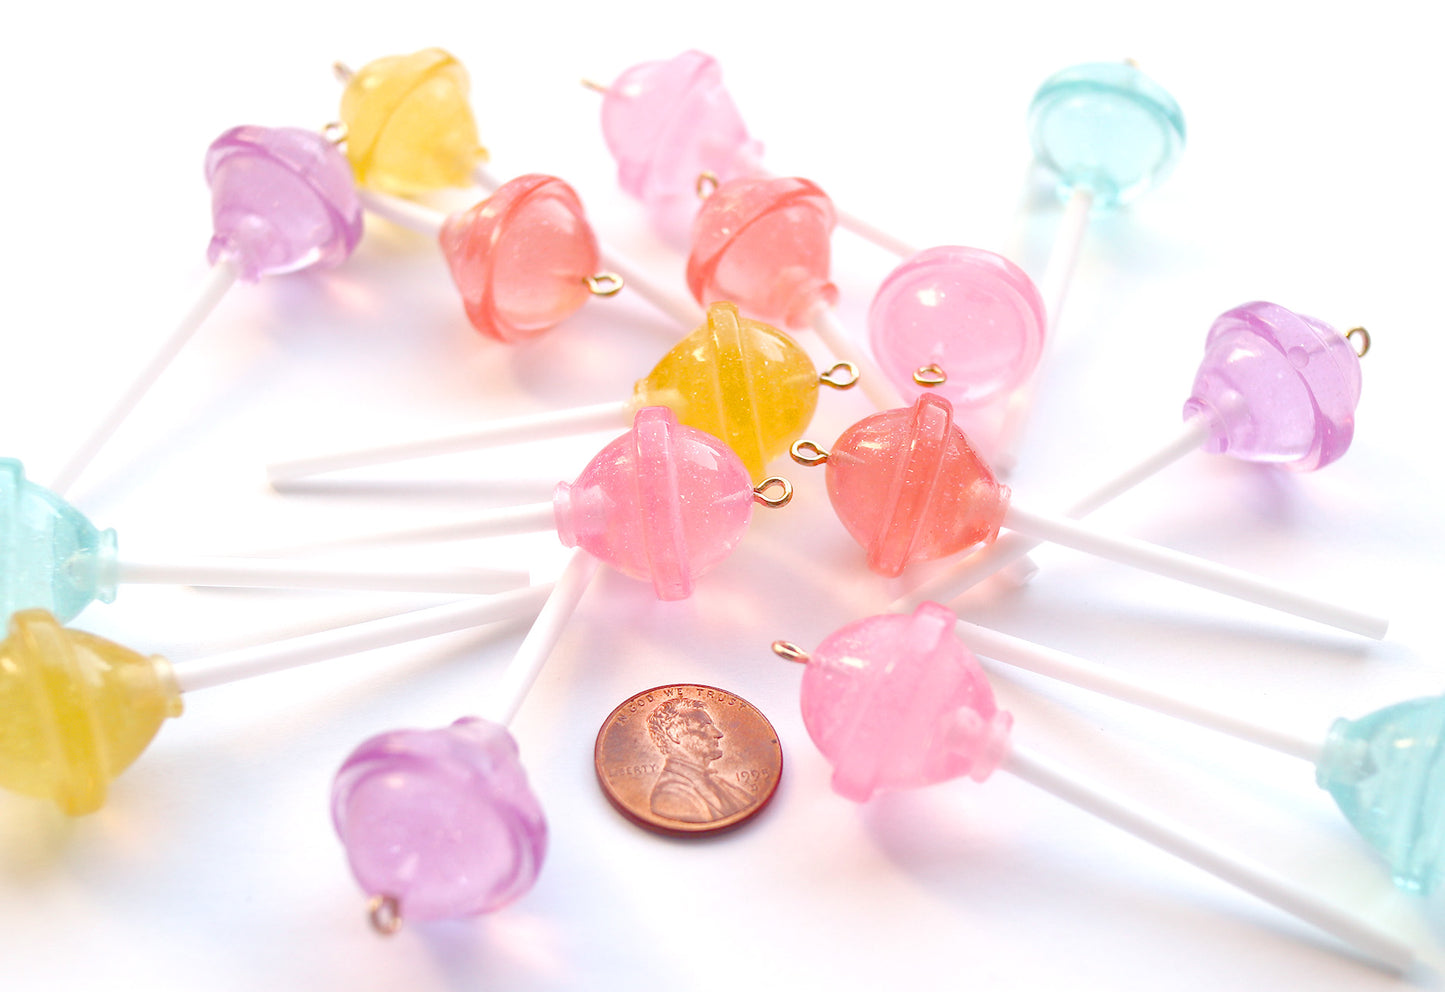 Lollipop Charms - 21mm Translucent Shimmer Pastel Little Lollipop Plastic Pendants or Resin Charms - 10 pc set